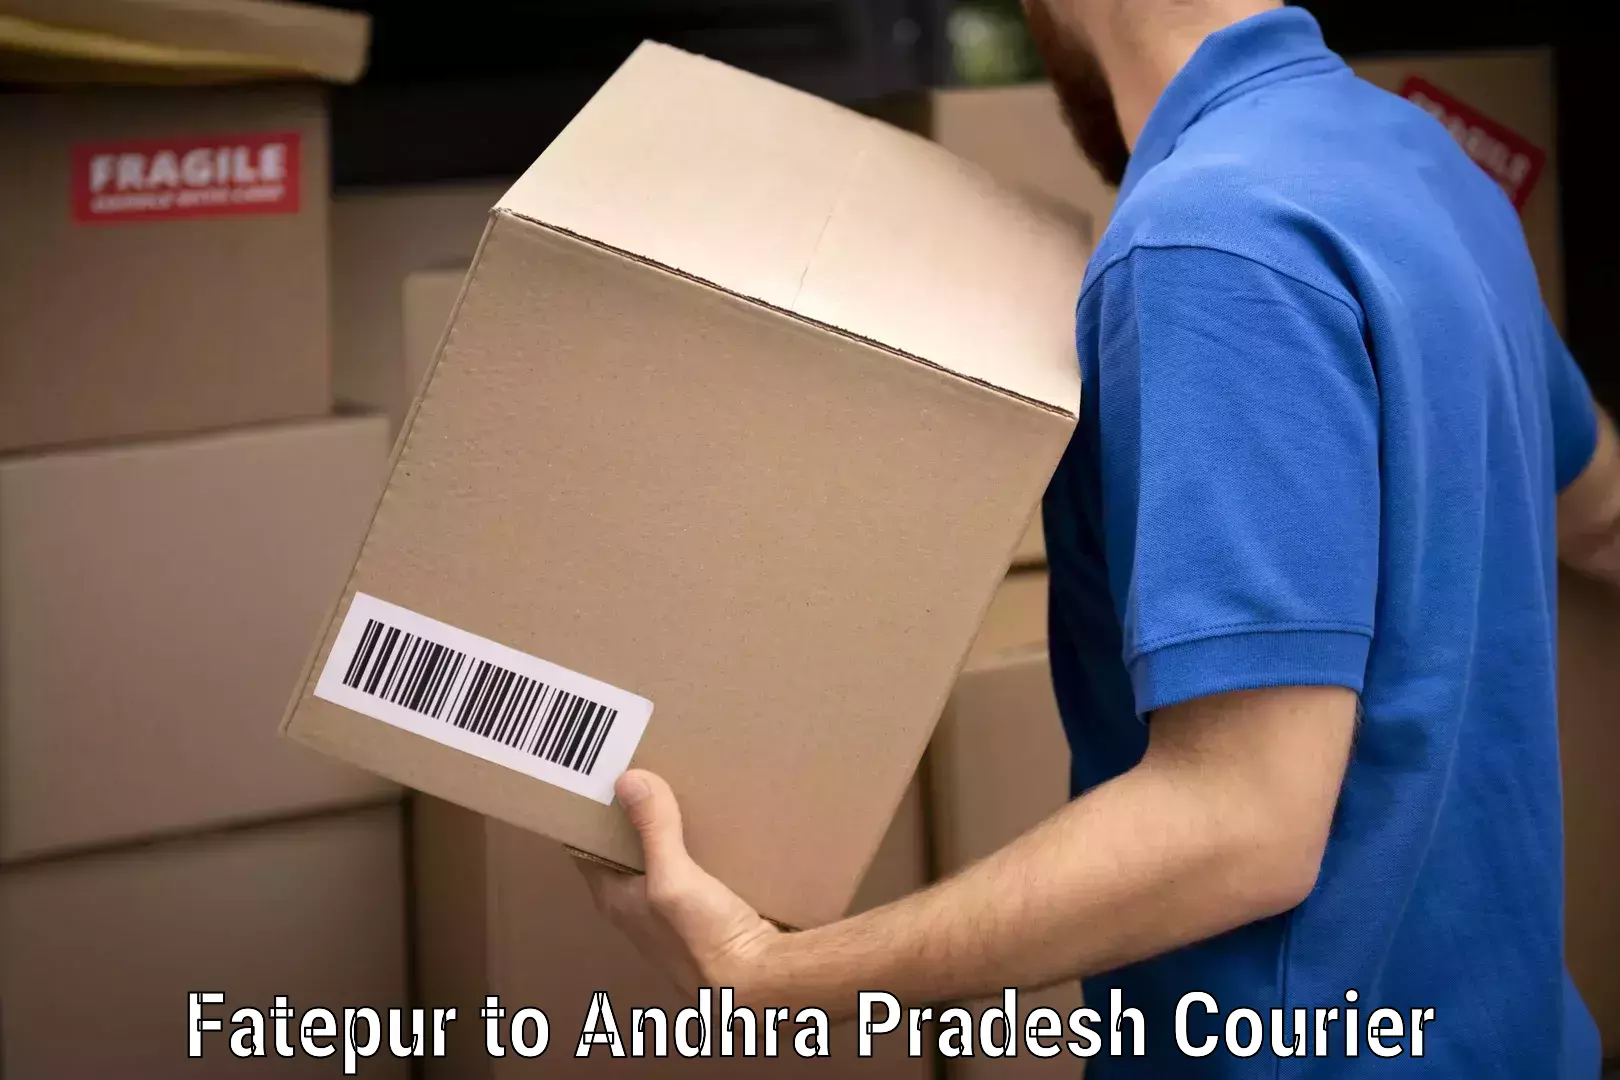 Furniture moving experts Fatepur to Andhra Pradesh